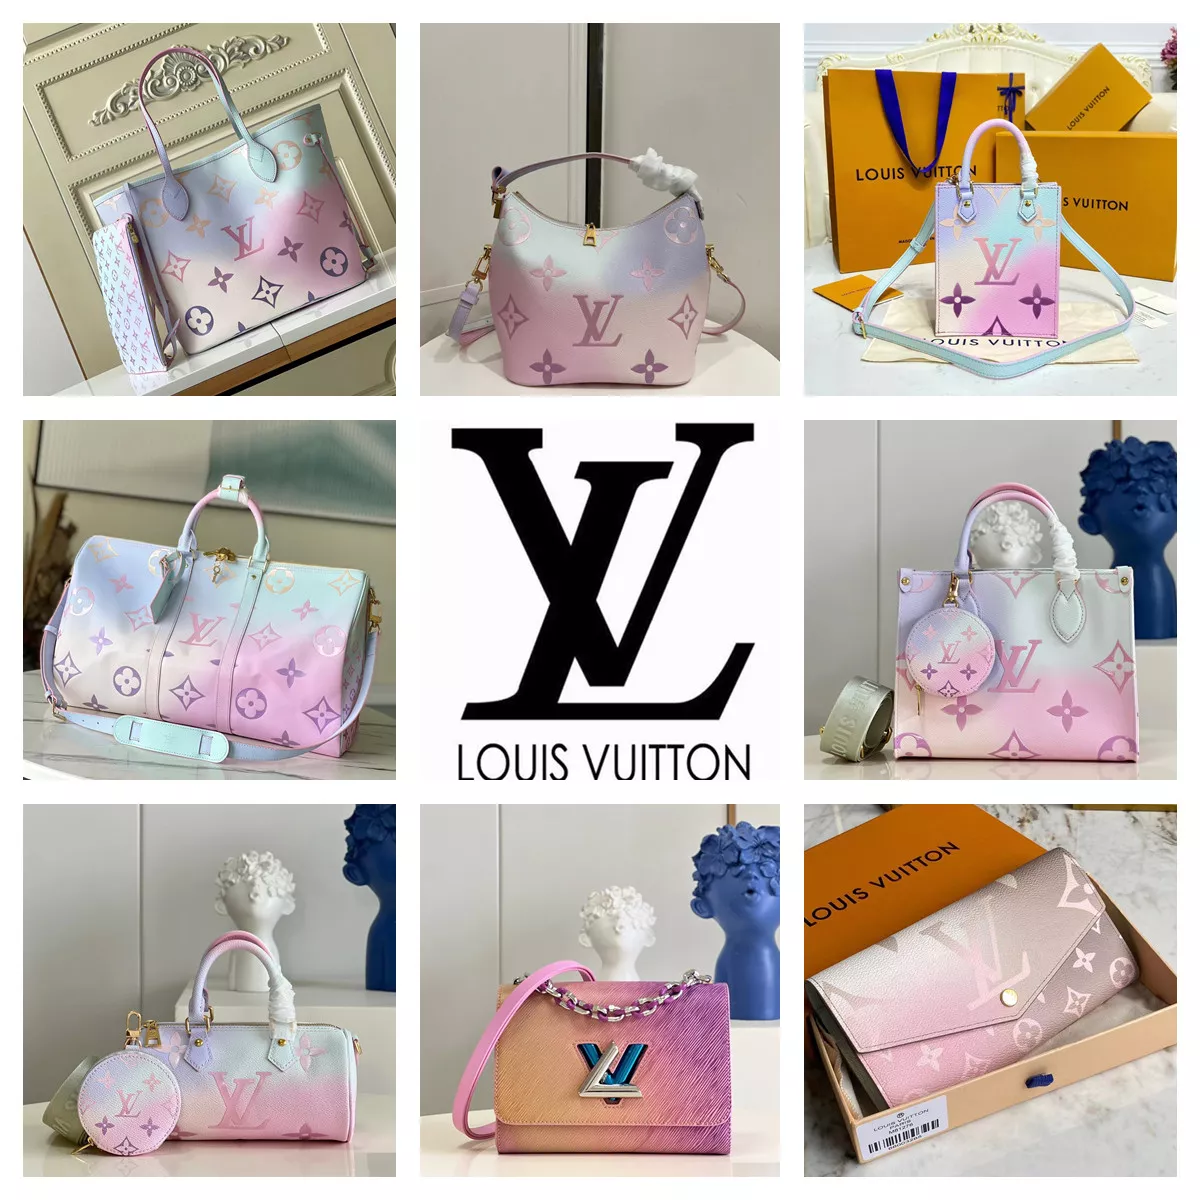 Louis Vuitton ショルダーバッグ | 萧凛が投稿したフォトブック | Lemon8